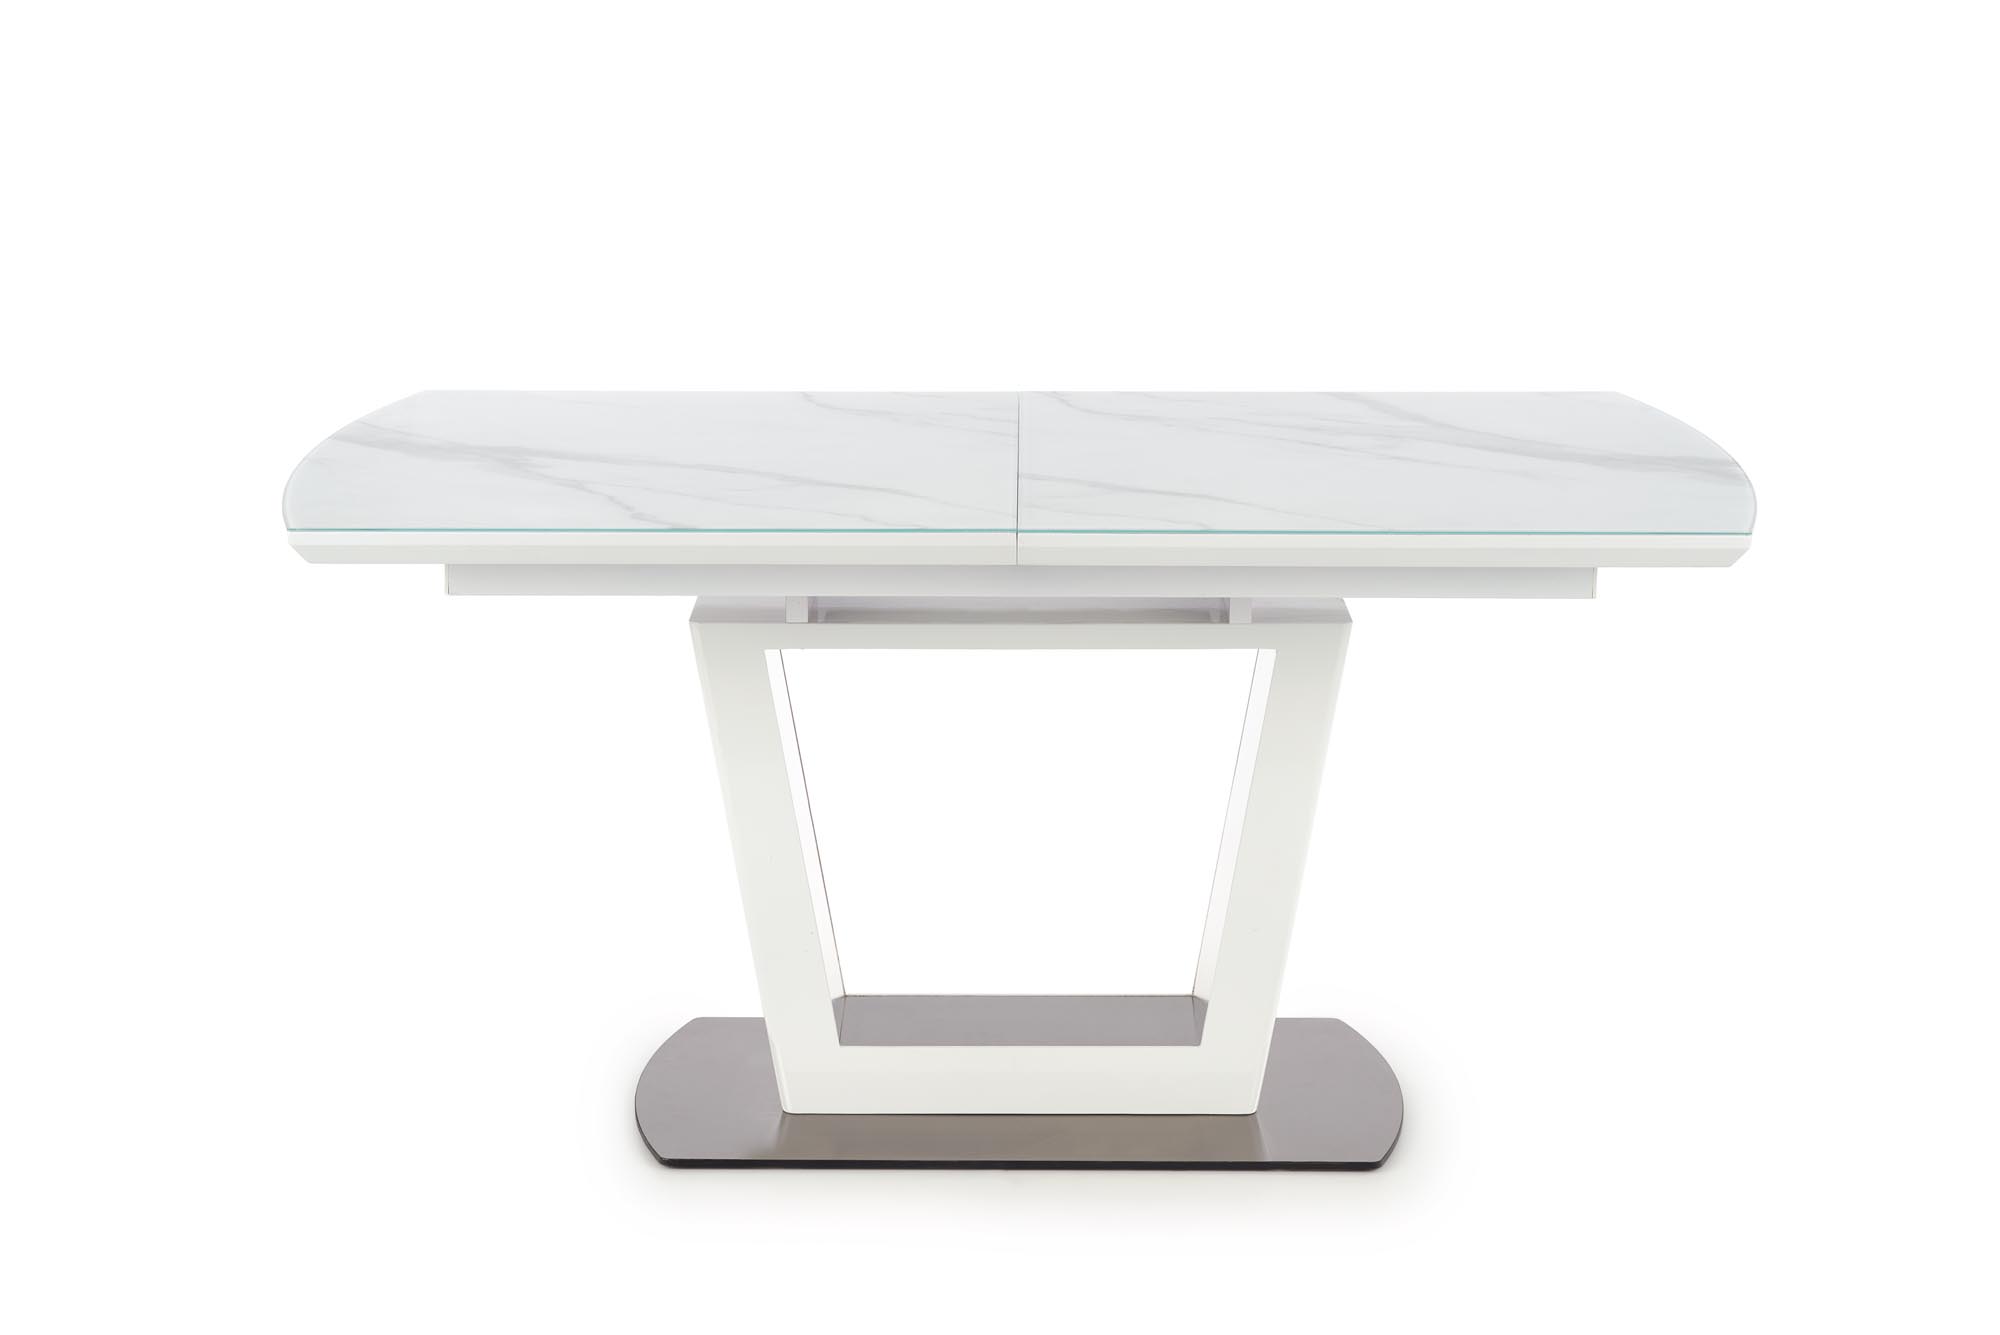 BLANCO Stůl rozkládací Deska - Bílý mramor / Bílý, noha - Bílý blanco stůl rozkládací Deska - Bílý mramor / Bílý, noha - Bílý